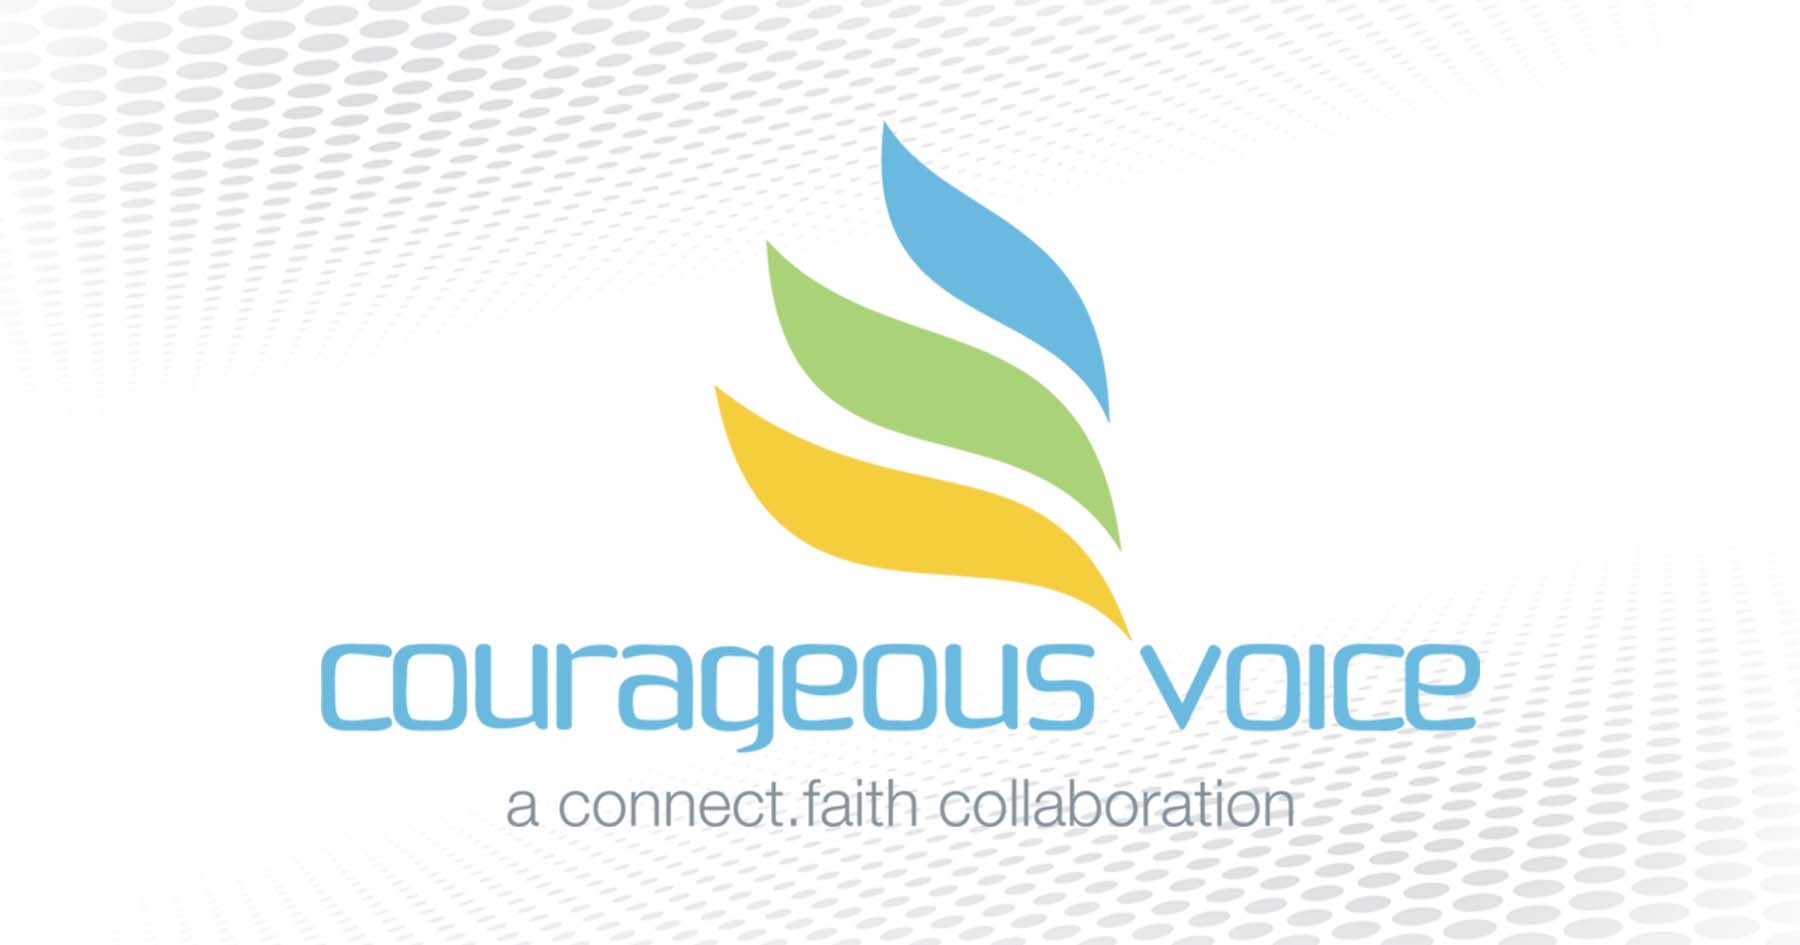 Revi Nagel | “Courageous Voice” | connect.faith